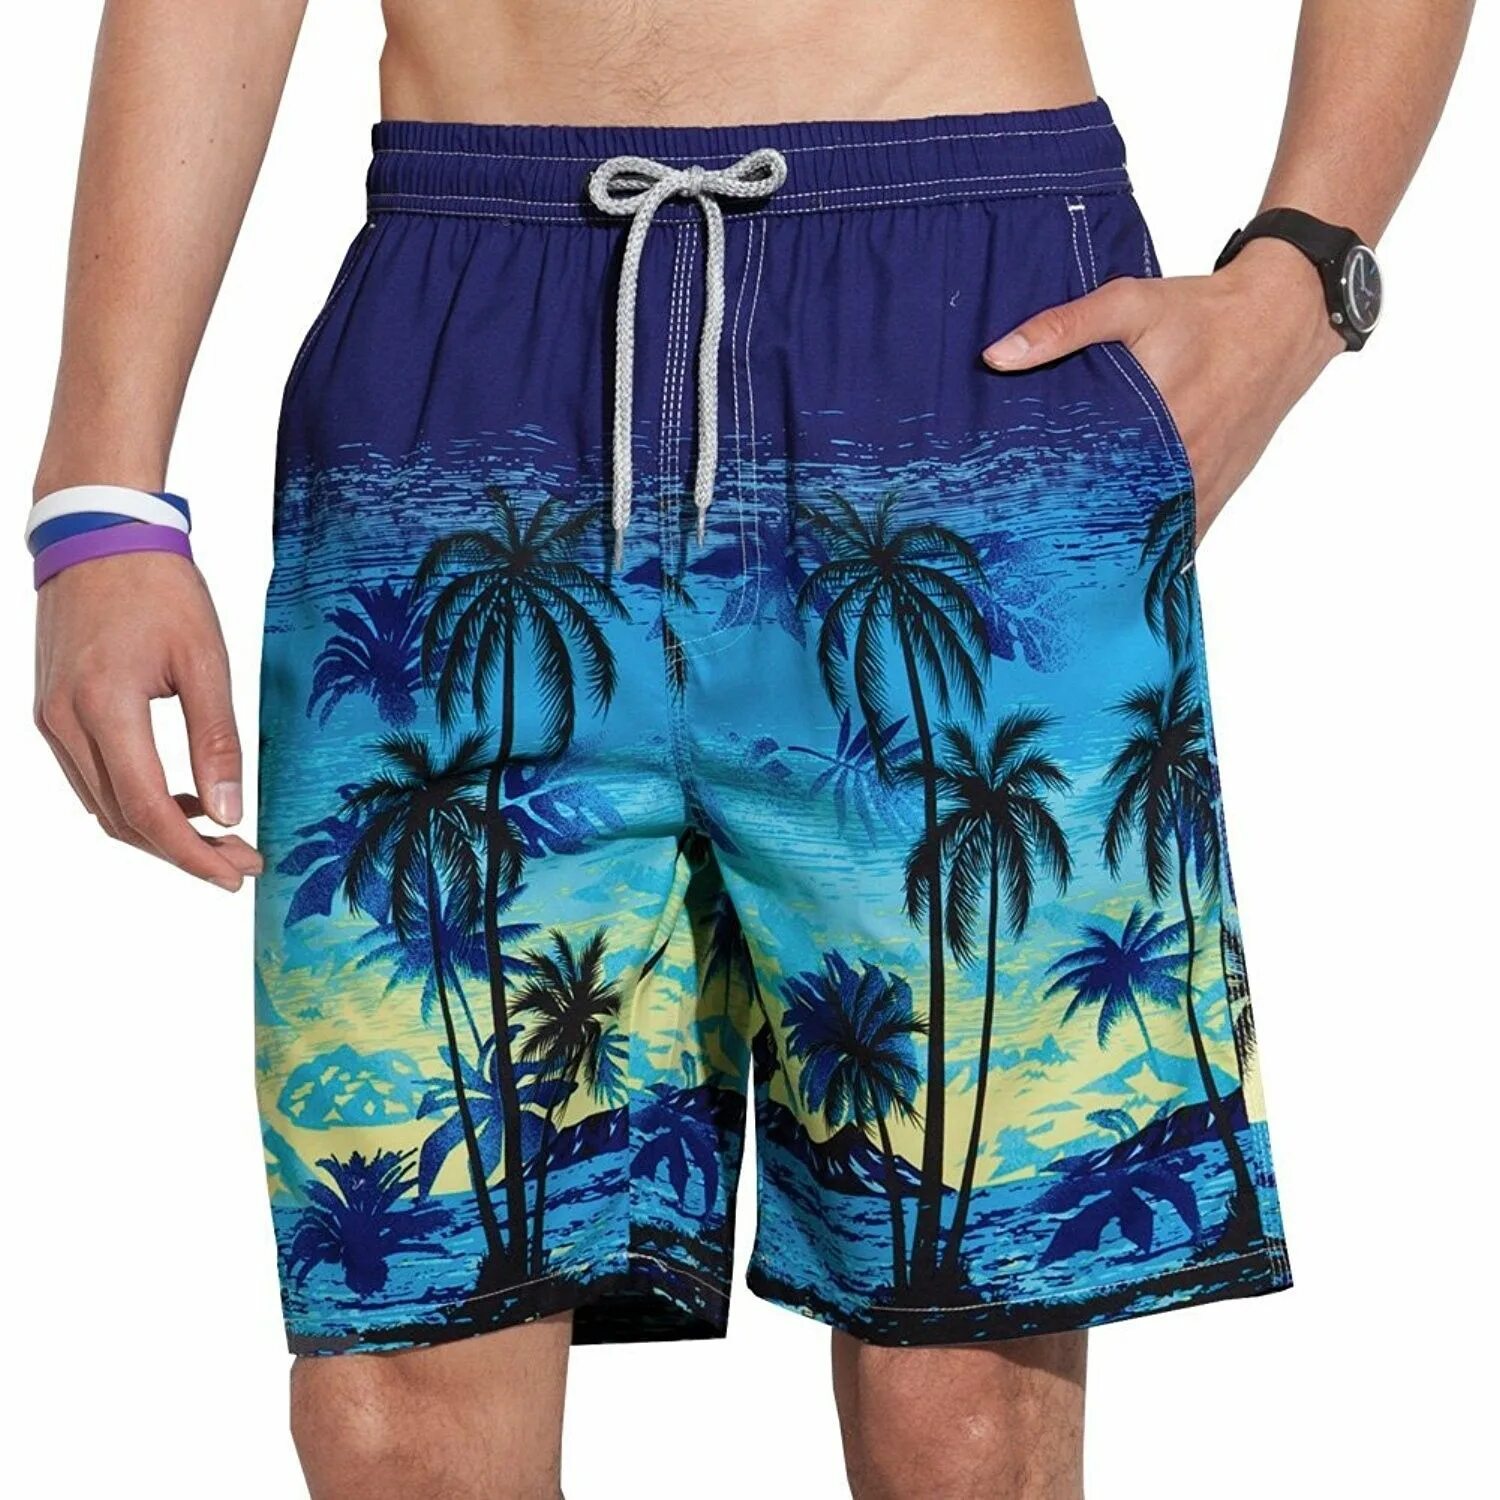 Шорты для пляжа. Reyn Spooner шорты мужские. Мужские плавательные шорты Venice Beach Eco. Плавательные шорты гуччи. Шорты с пальмами мужские.